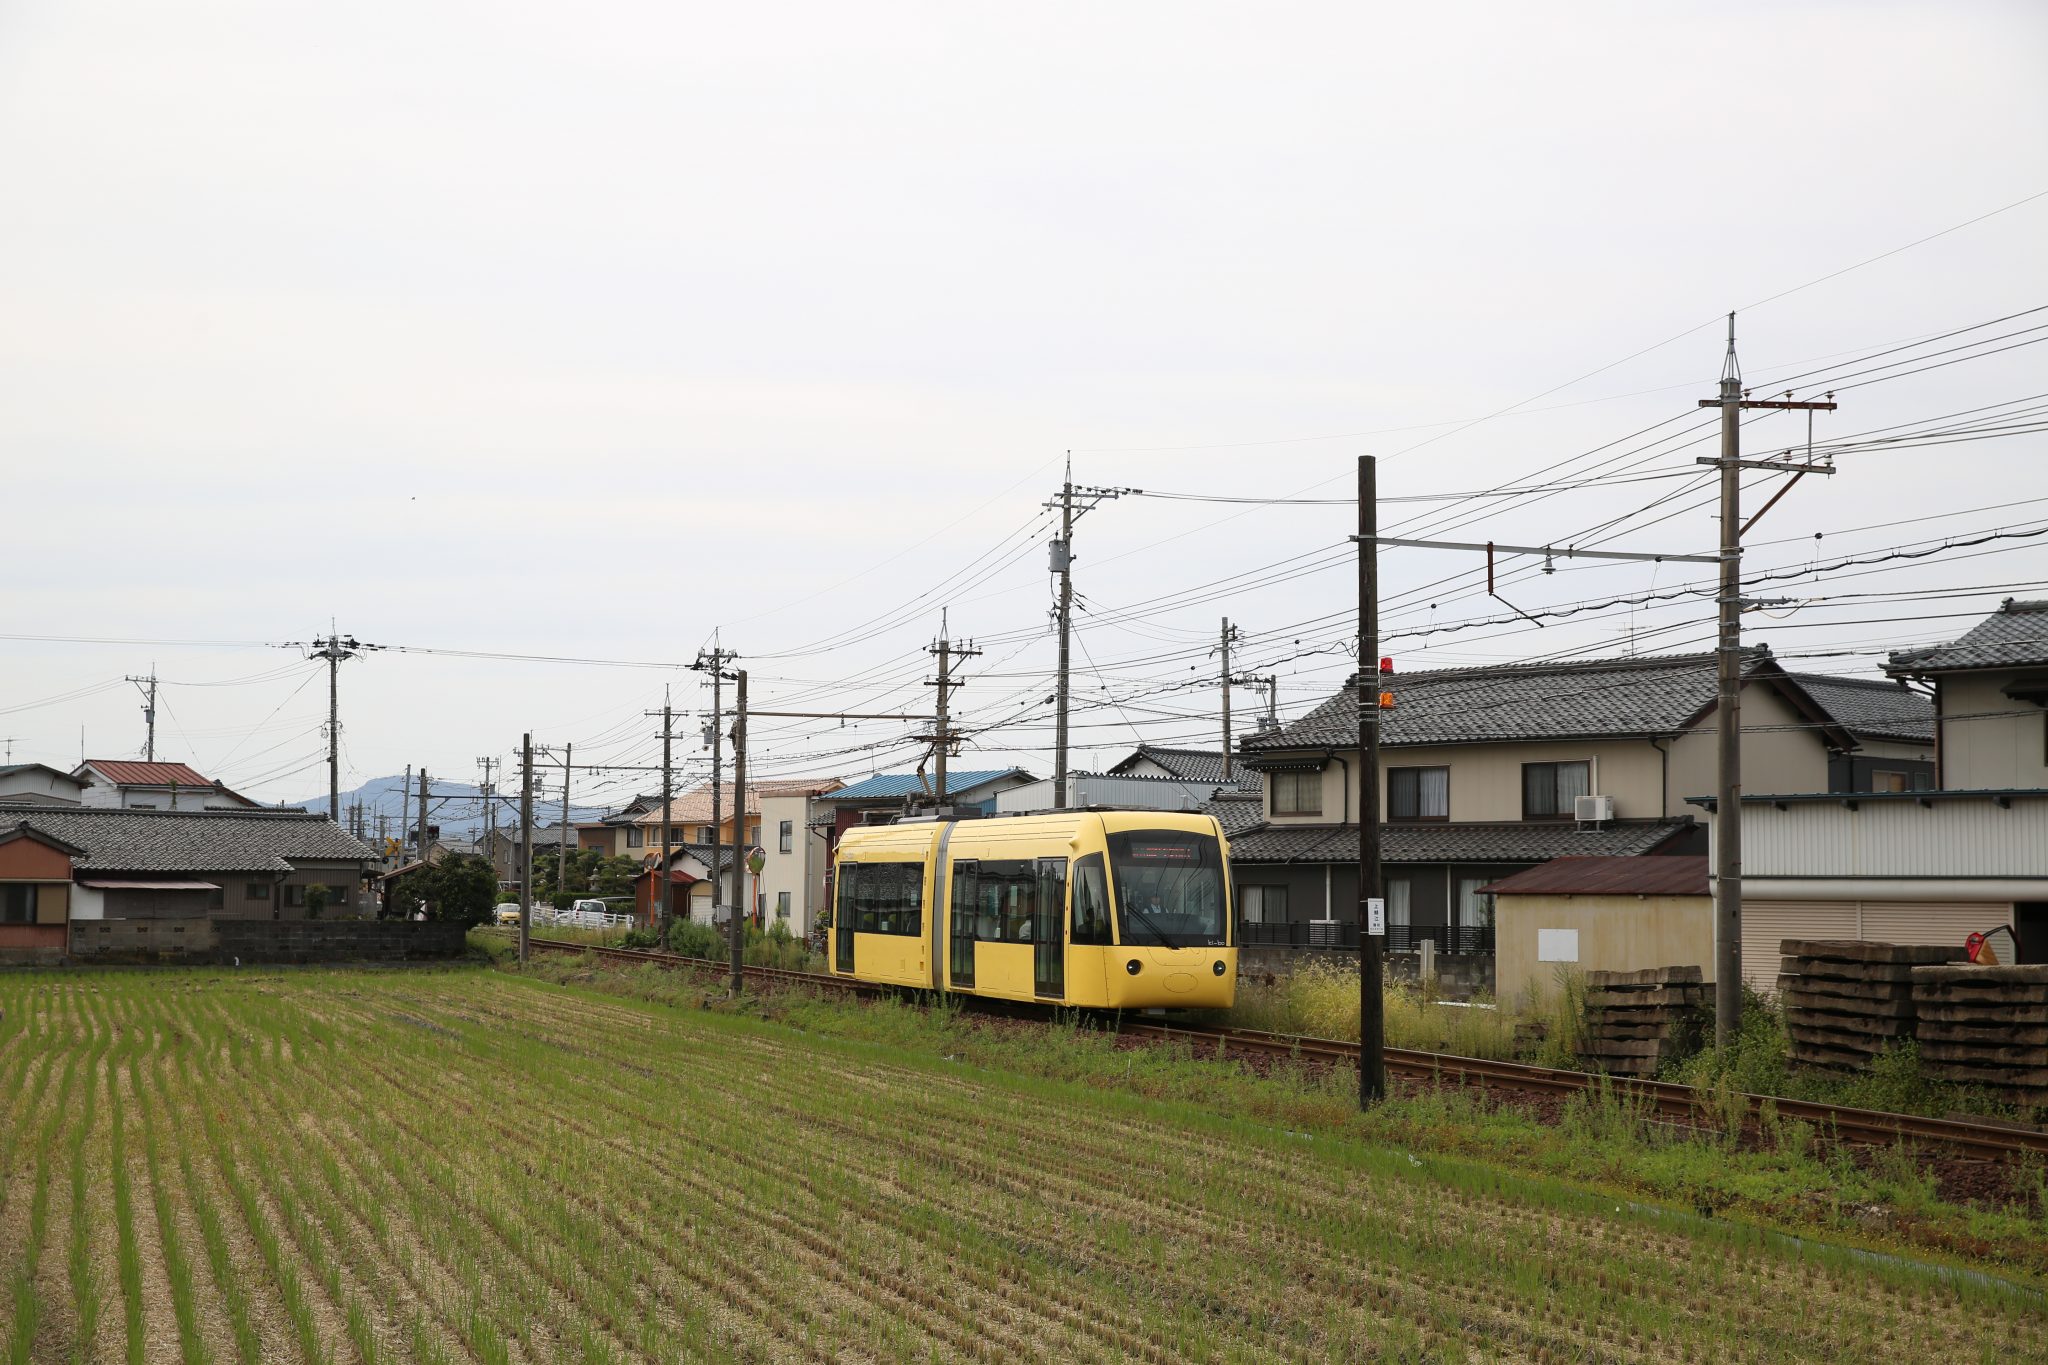 Fukui. Moderne lagevloertram op interlokale tramlijn, bijna een spoorlijn